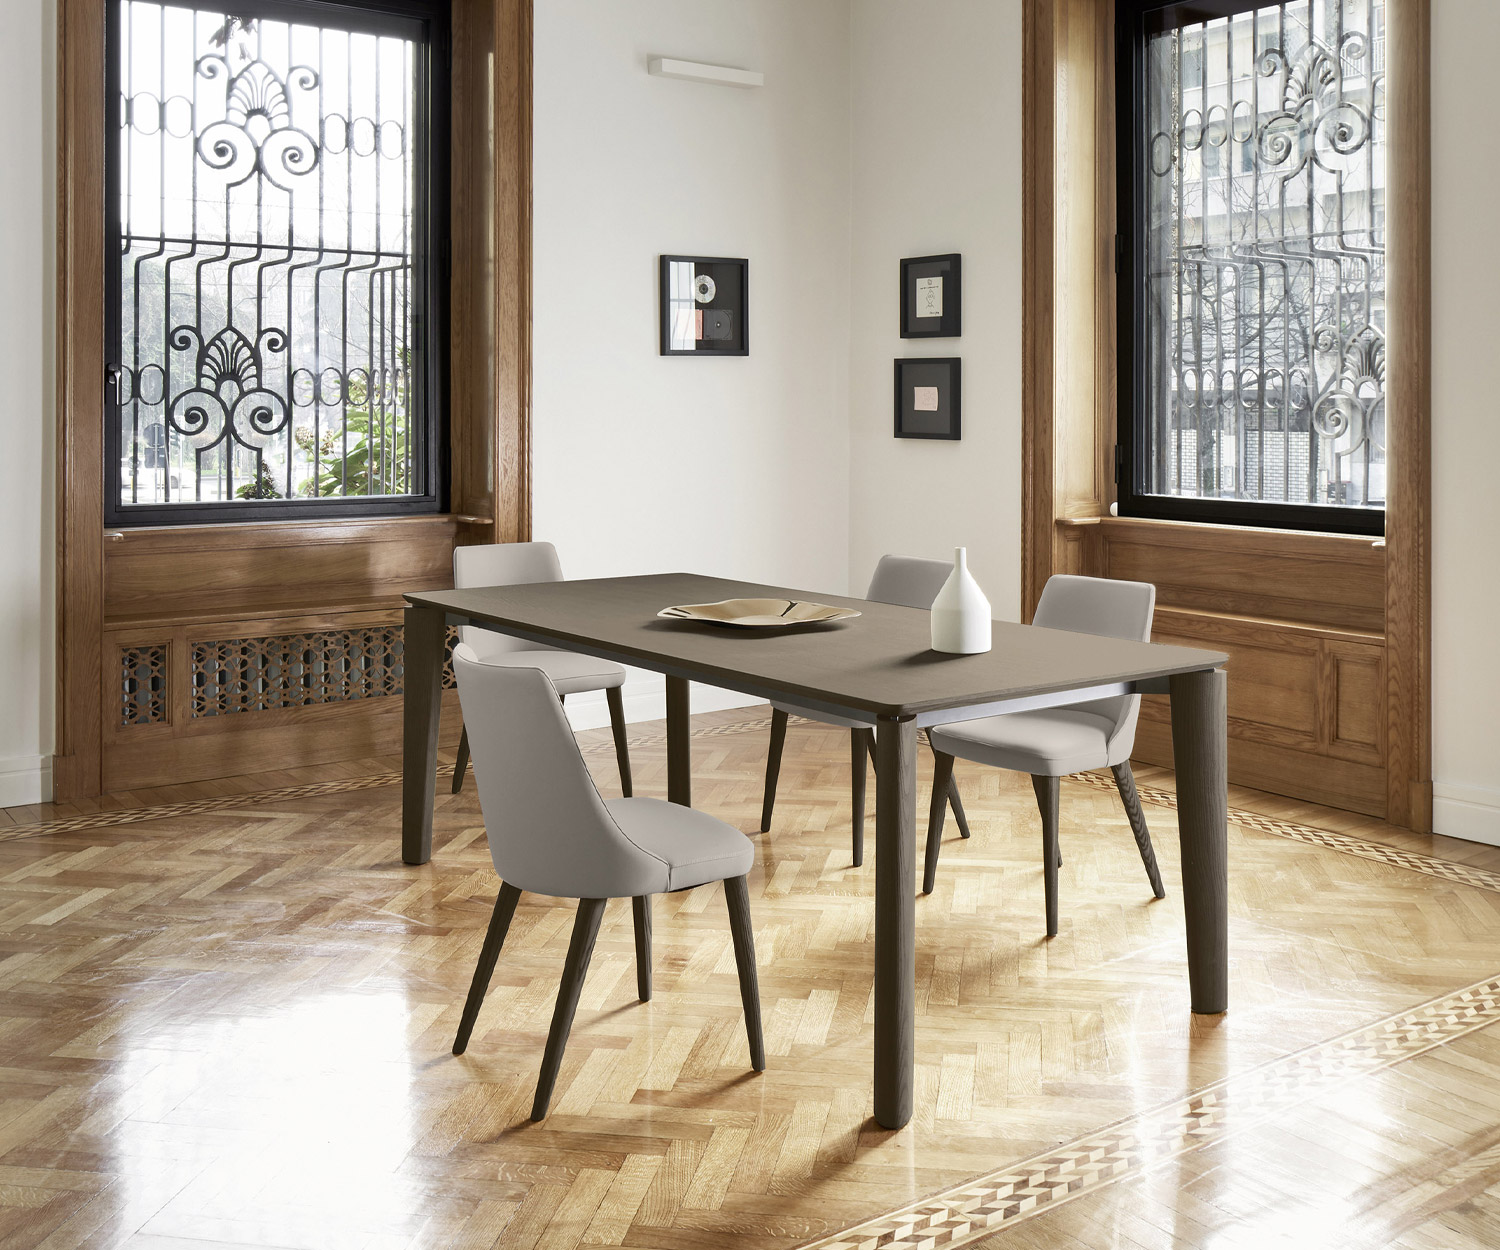 Chaise Eva douce Livitalia avec revêtement gris clair en similicuir à la table de la salle à manger